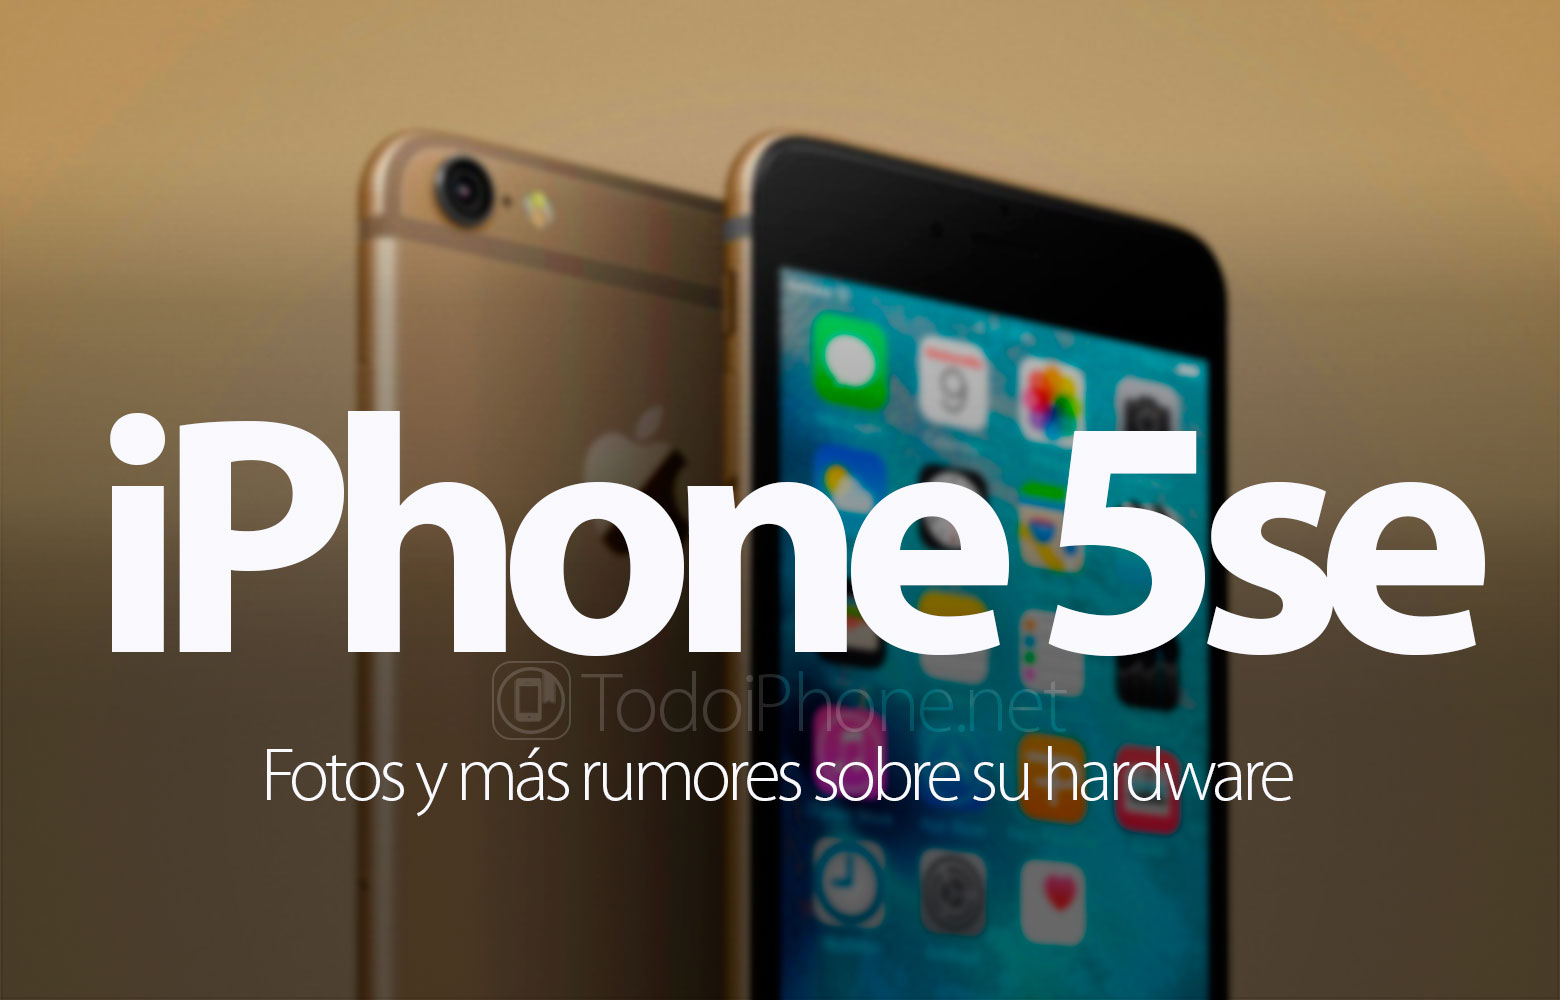 iphone-5se-foto-rumores-hardware